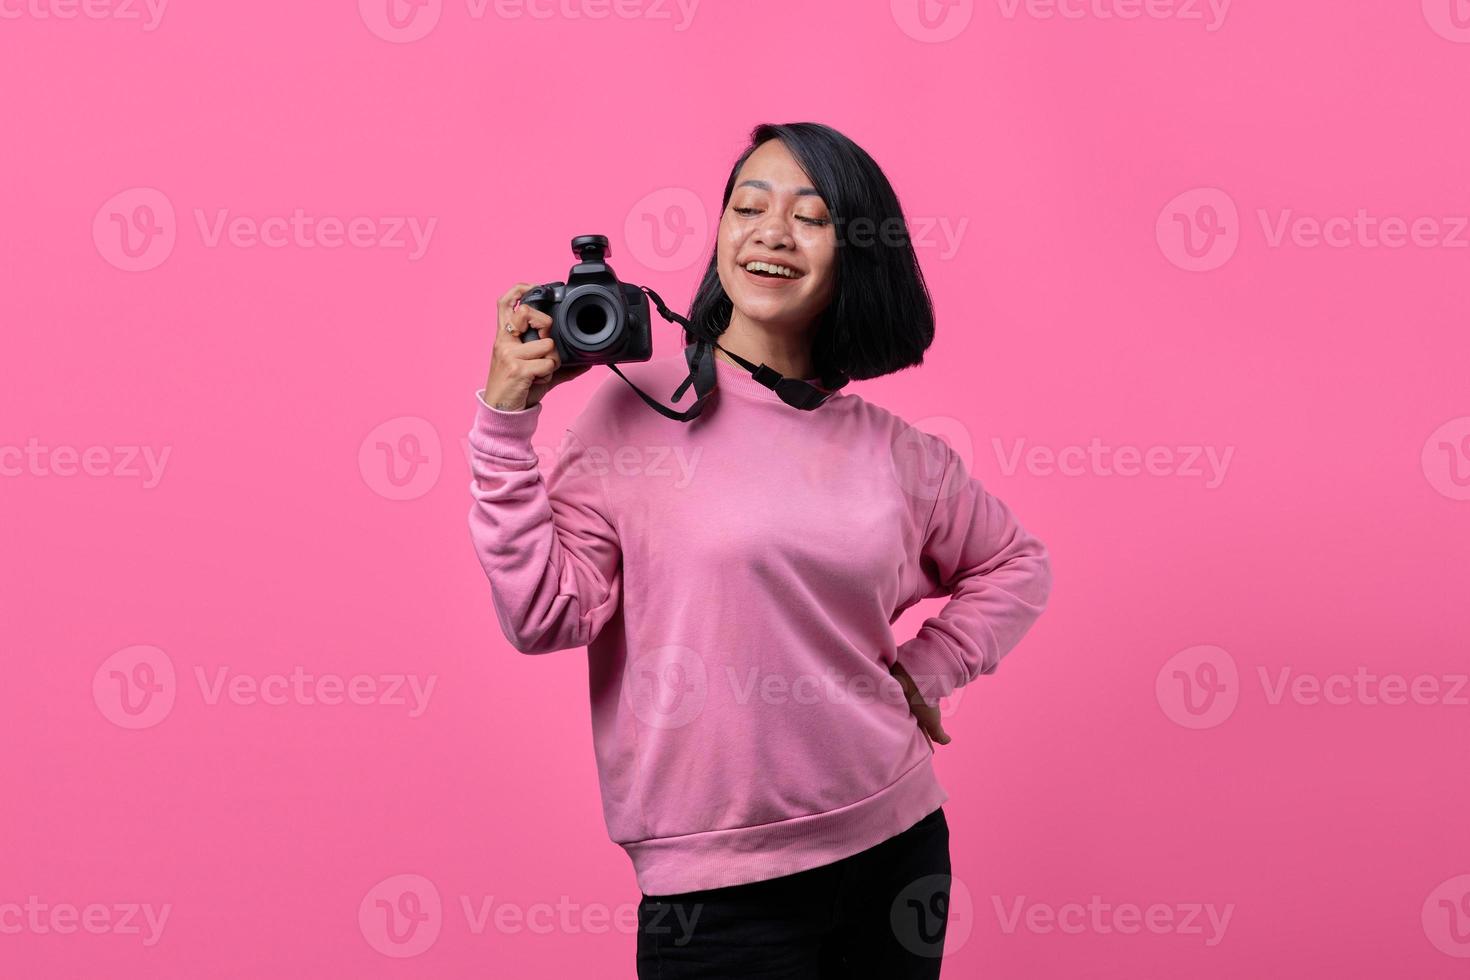 feliz, sonriente, mujer joven, tenencia, cámara, en, fondo rosa foto